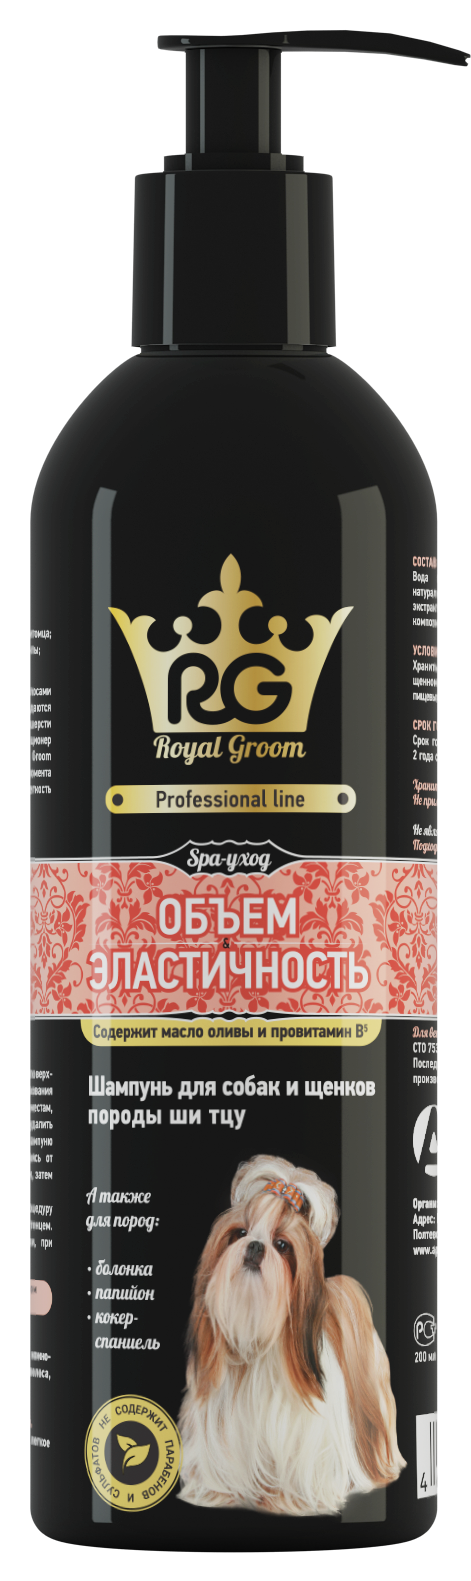 Royal Groom шампунь для собак и щенков пород: ши-тцу, папийон, болонка, кокер-спаниель